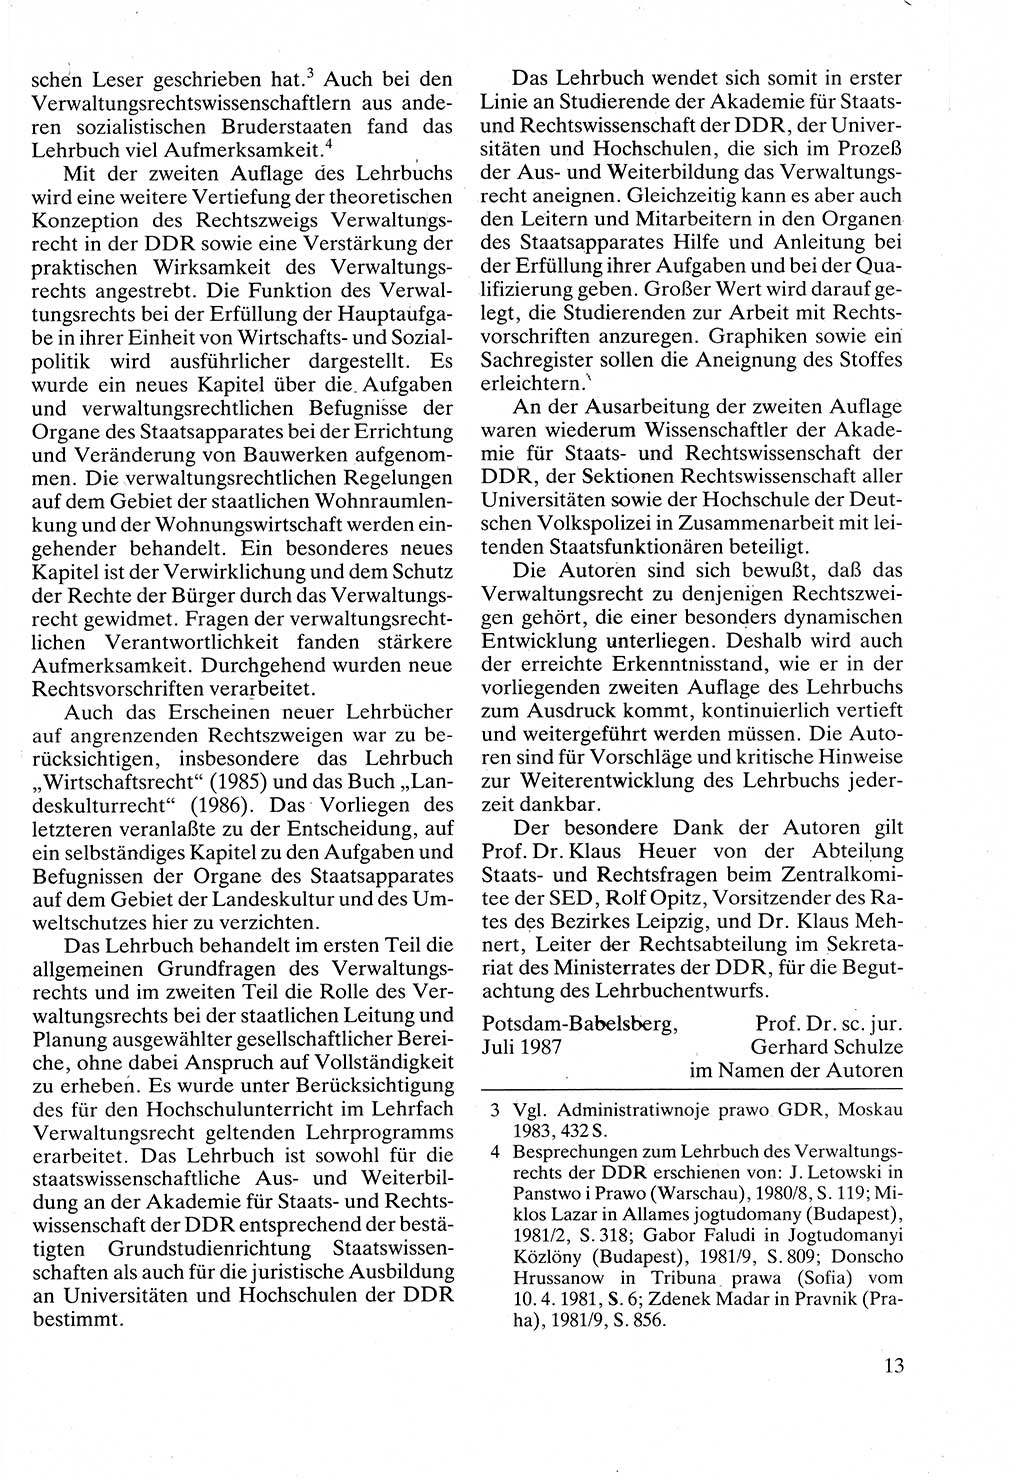 Verwaltungsrecht [Deutsche Demokratische Republik (DDR)], Lehrbuch 1988, Seite 13 (Verw.-R. DDR Lb. 1988, S. 13)